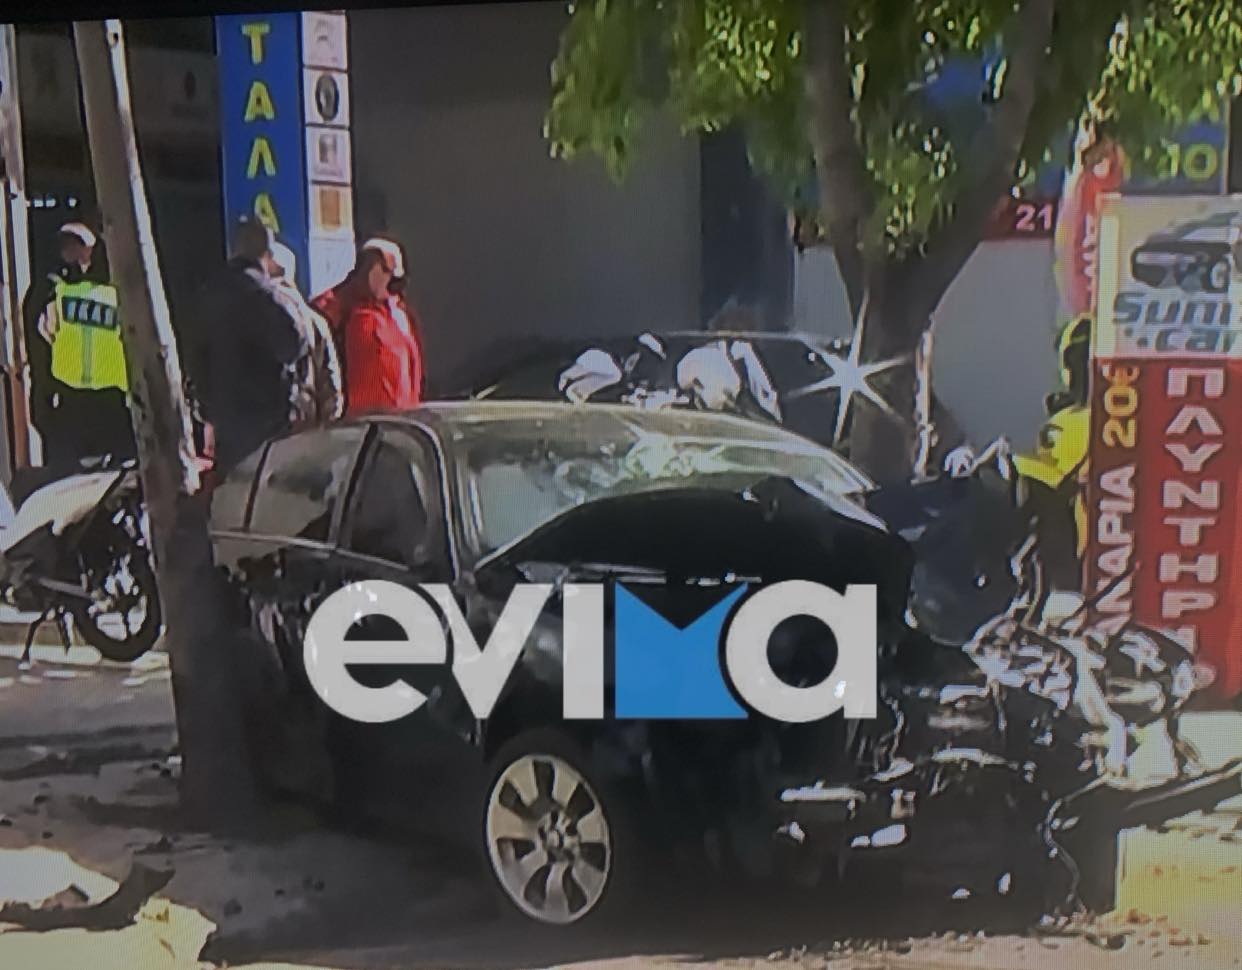 Συναγερμός στην ΕΛ.ΑΣ. : Κλεμμένο όχημα μετά από καταδίωξη έπεσε σε πεζούς – Πληροφορίες για δύο γυναίκες τραυματίες